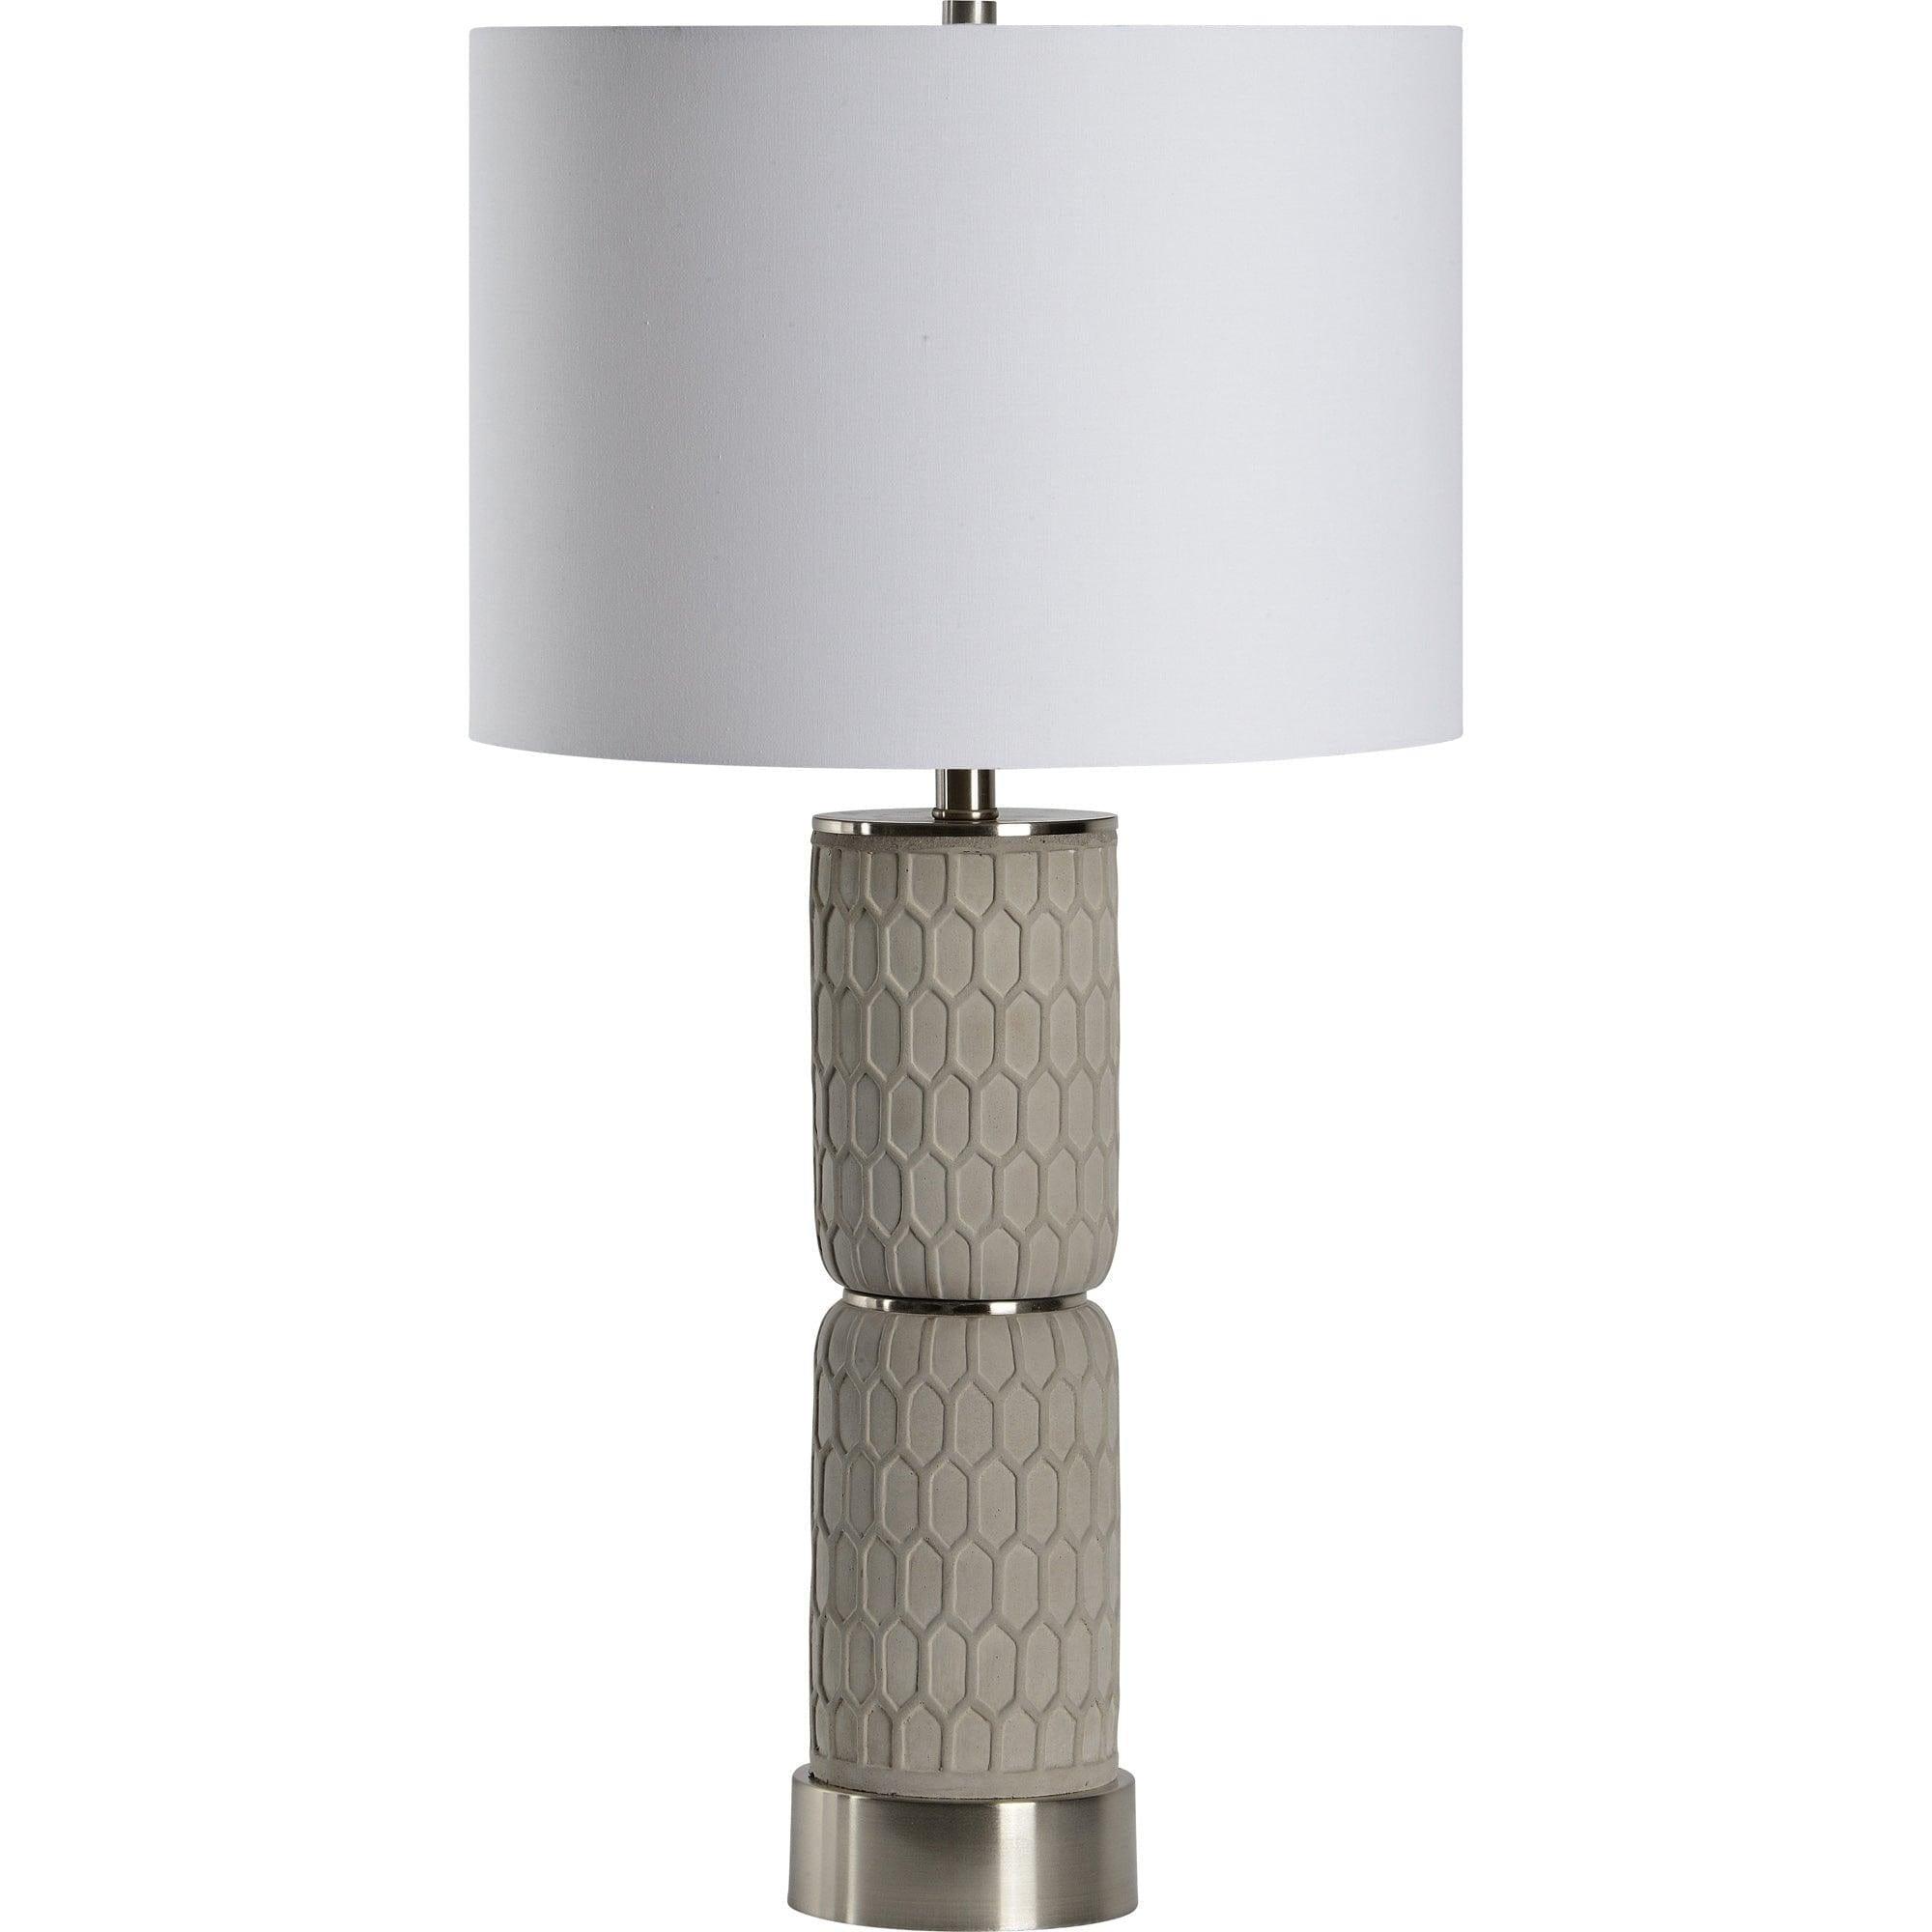 Renwil - Kanata Table Lamp - LPT1162 | Montreal Lighting & Hardware